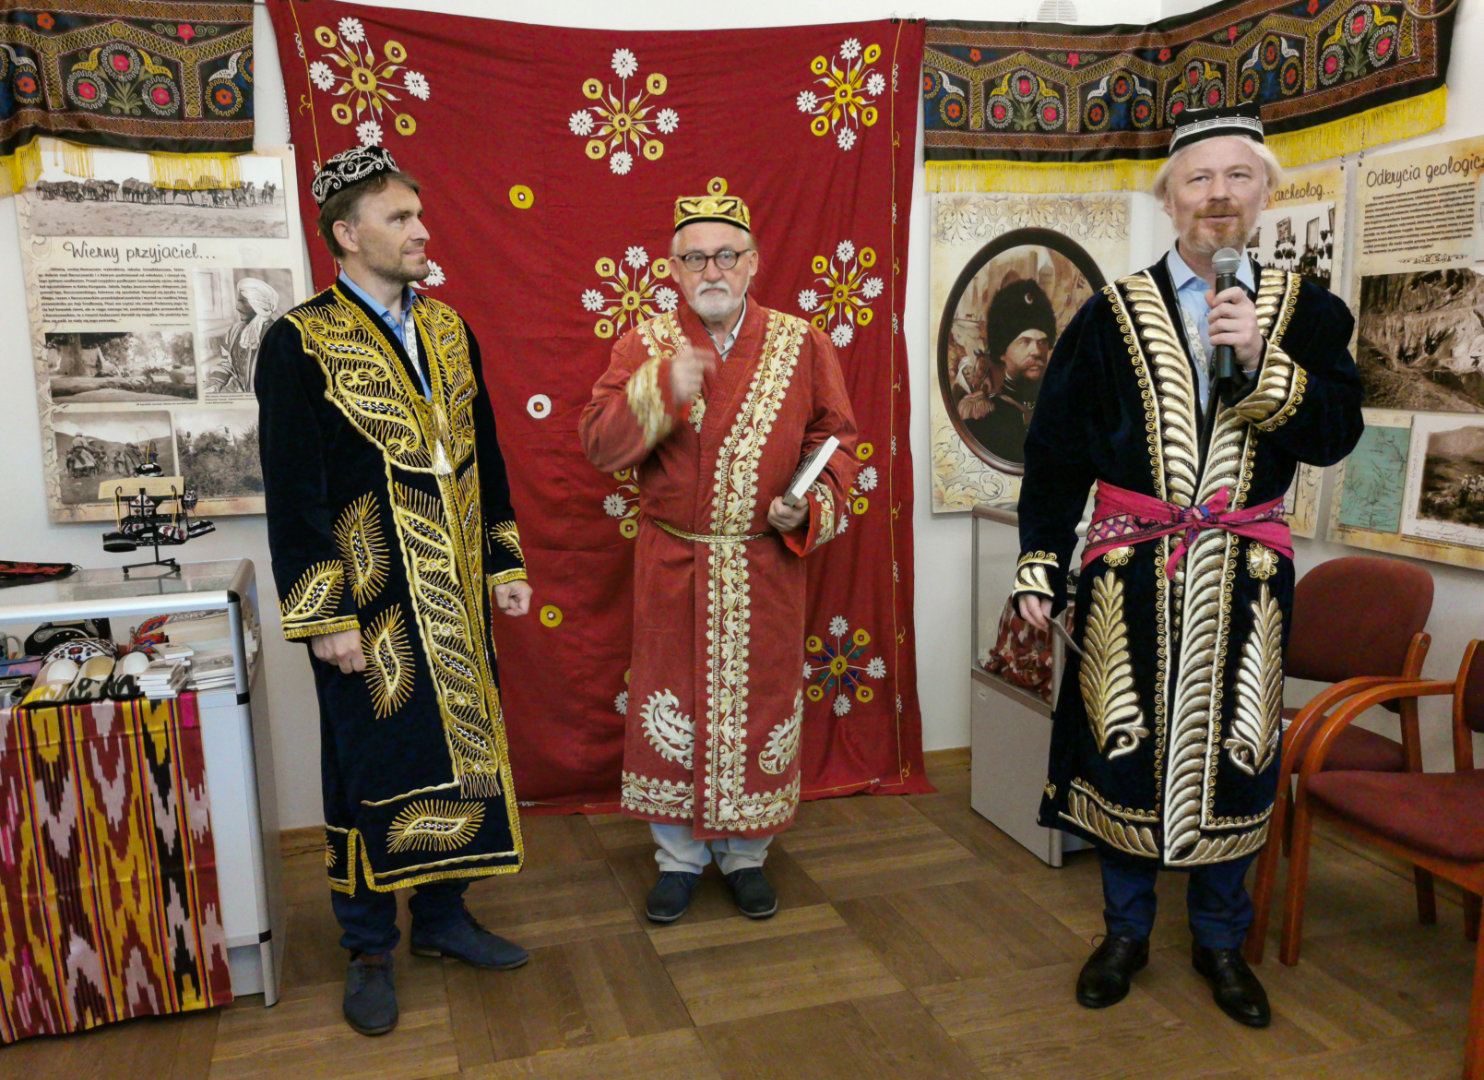 Uczestnicy wernisażu (trzech mężczyzn) opowiadają o wystawie historyczno-przyrodniczej o Pamirze w regionalnych strojach i nakryciach głowy na tle udekorowanej tkaninami, obrazami i zdjęciami sali